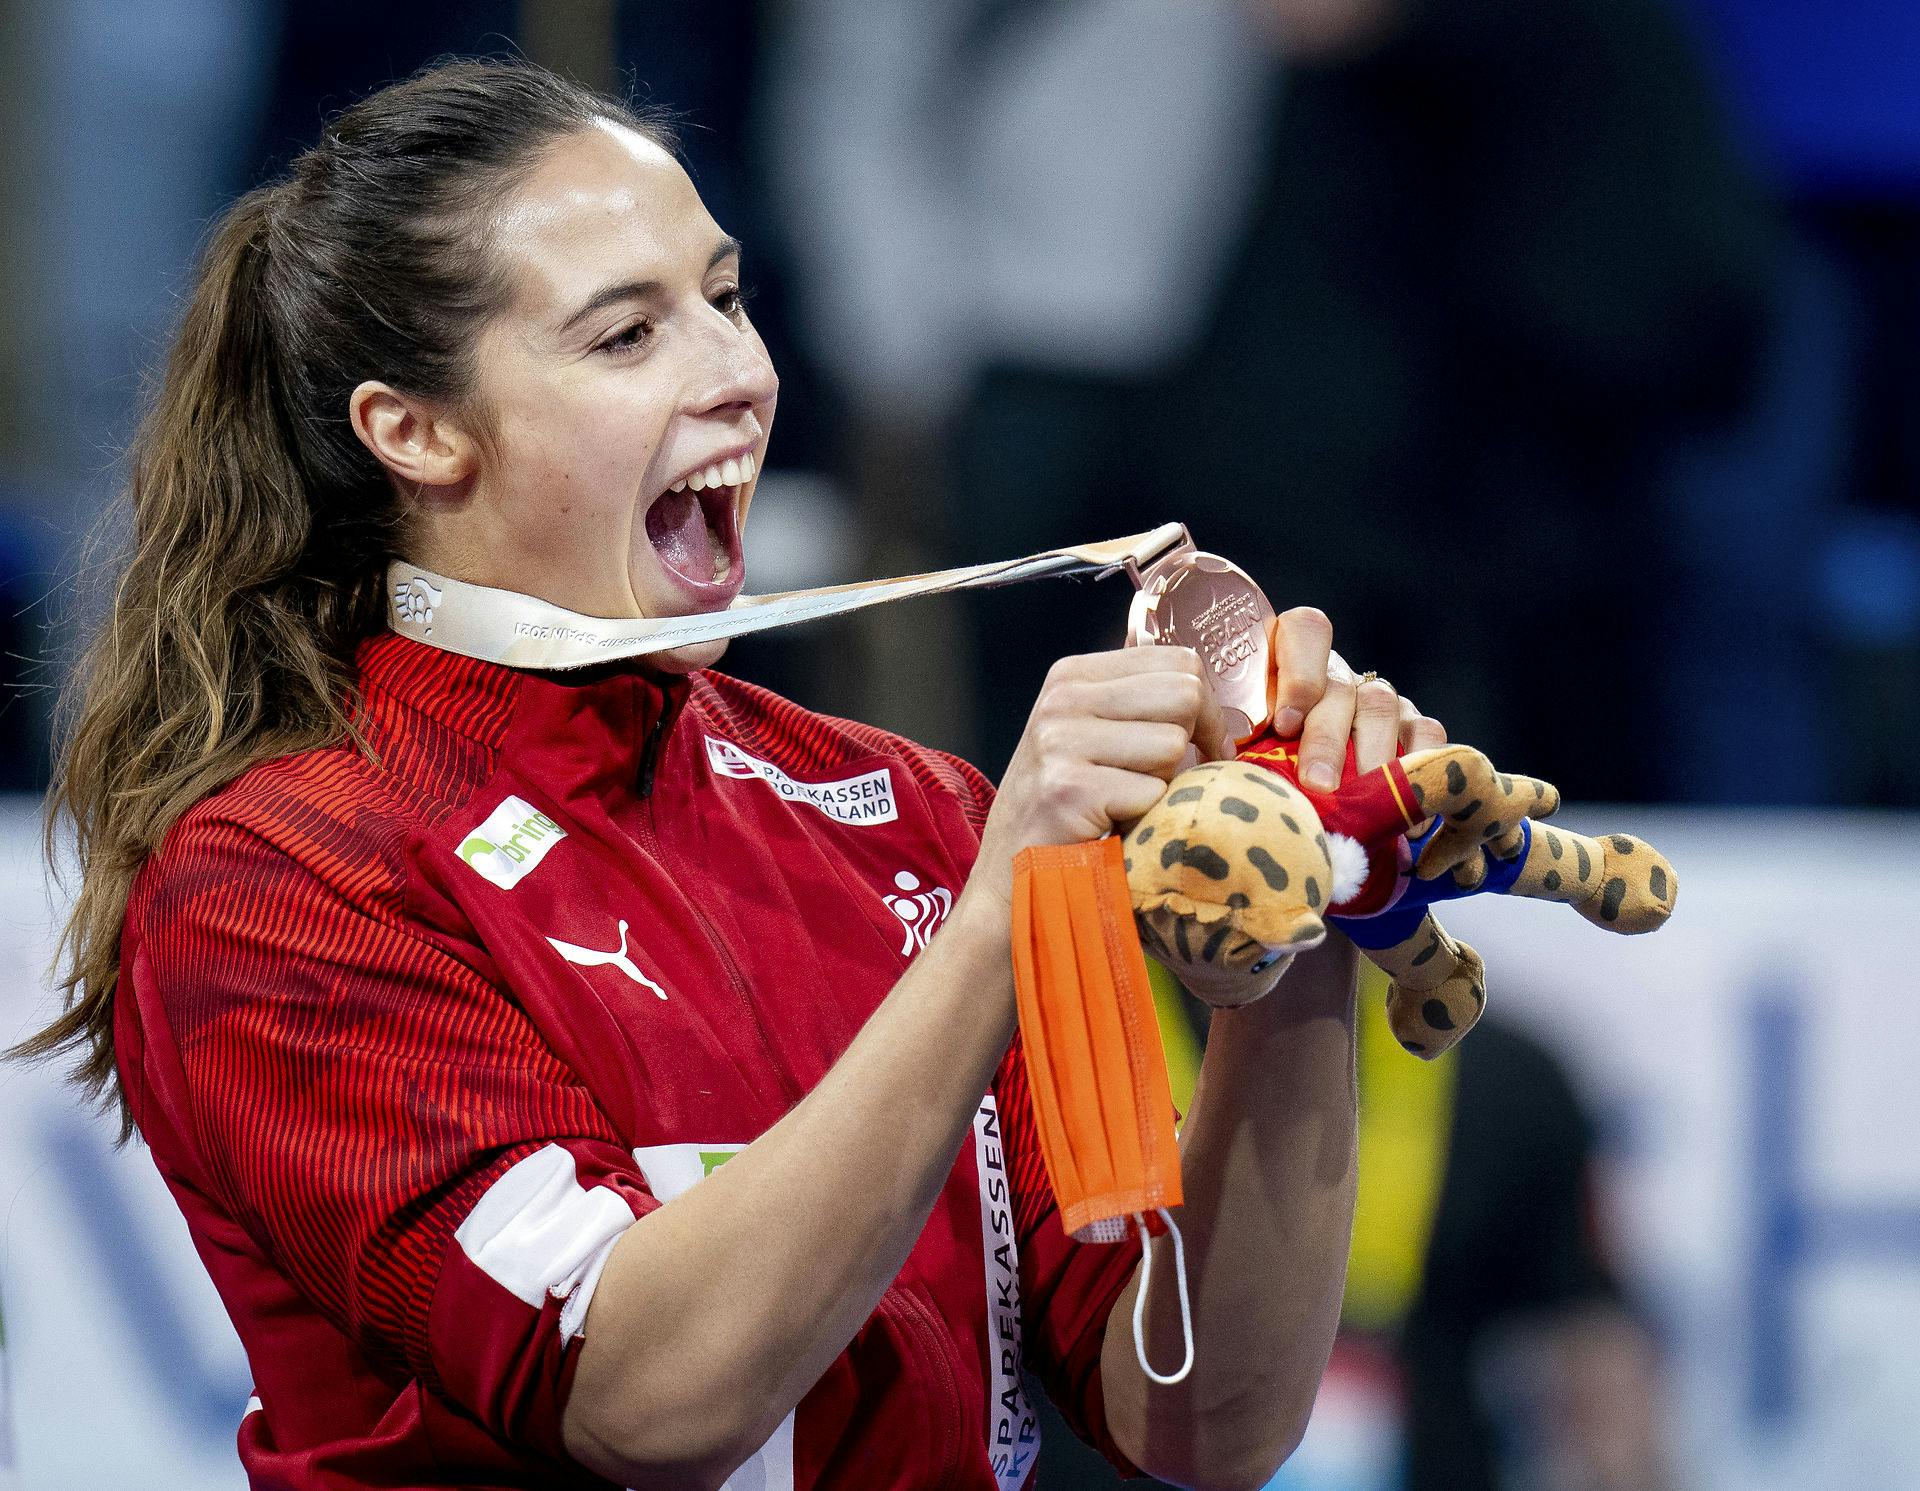 Sidste år vandt de danske håndboldkvinder VM-bronze ved slutrunden i Spanien. Hvem ved, hvad det kan blive til årets EM-slutrunde?
